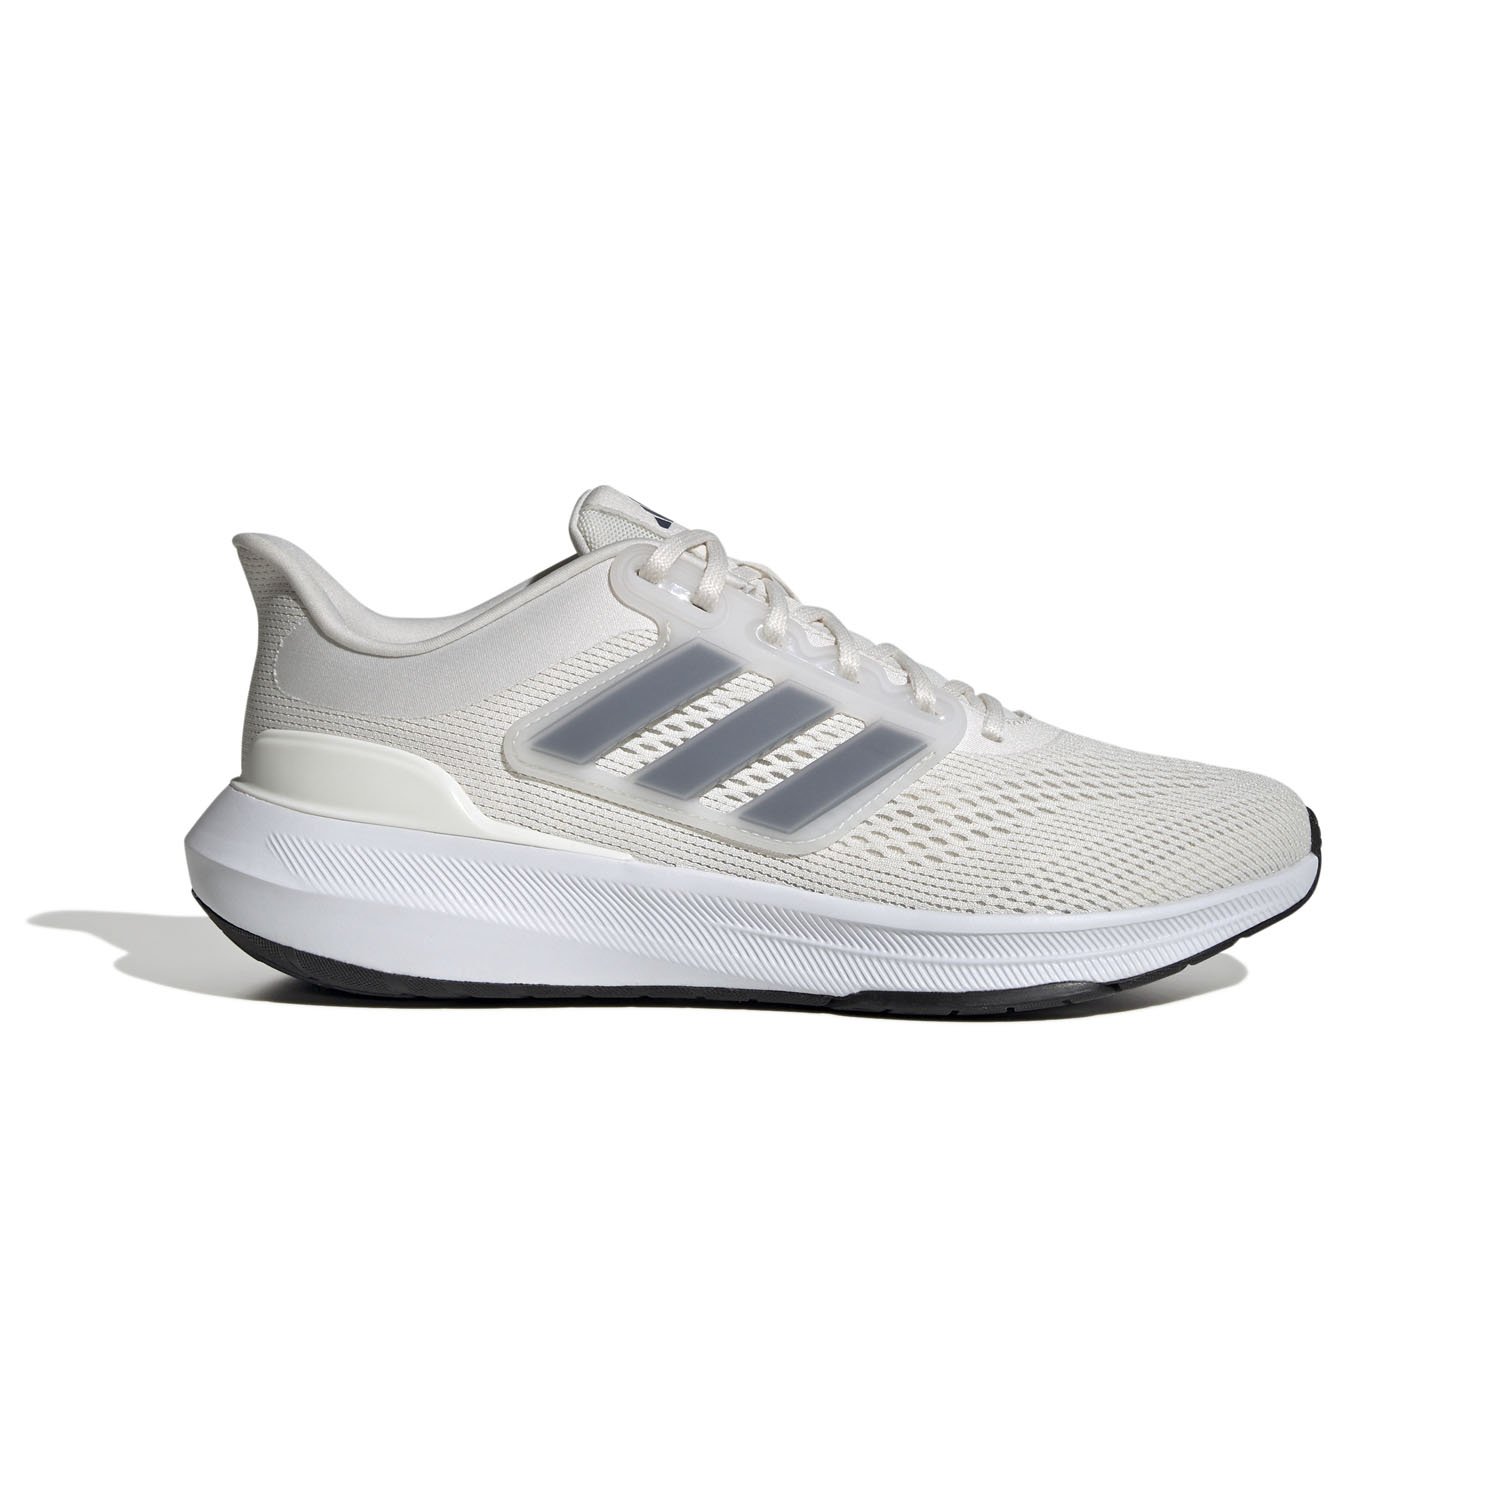 Adidas Ultrabounce Erkek Koşu Ayakkabısı - Beyaz - 1